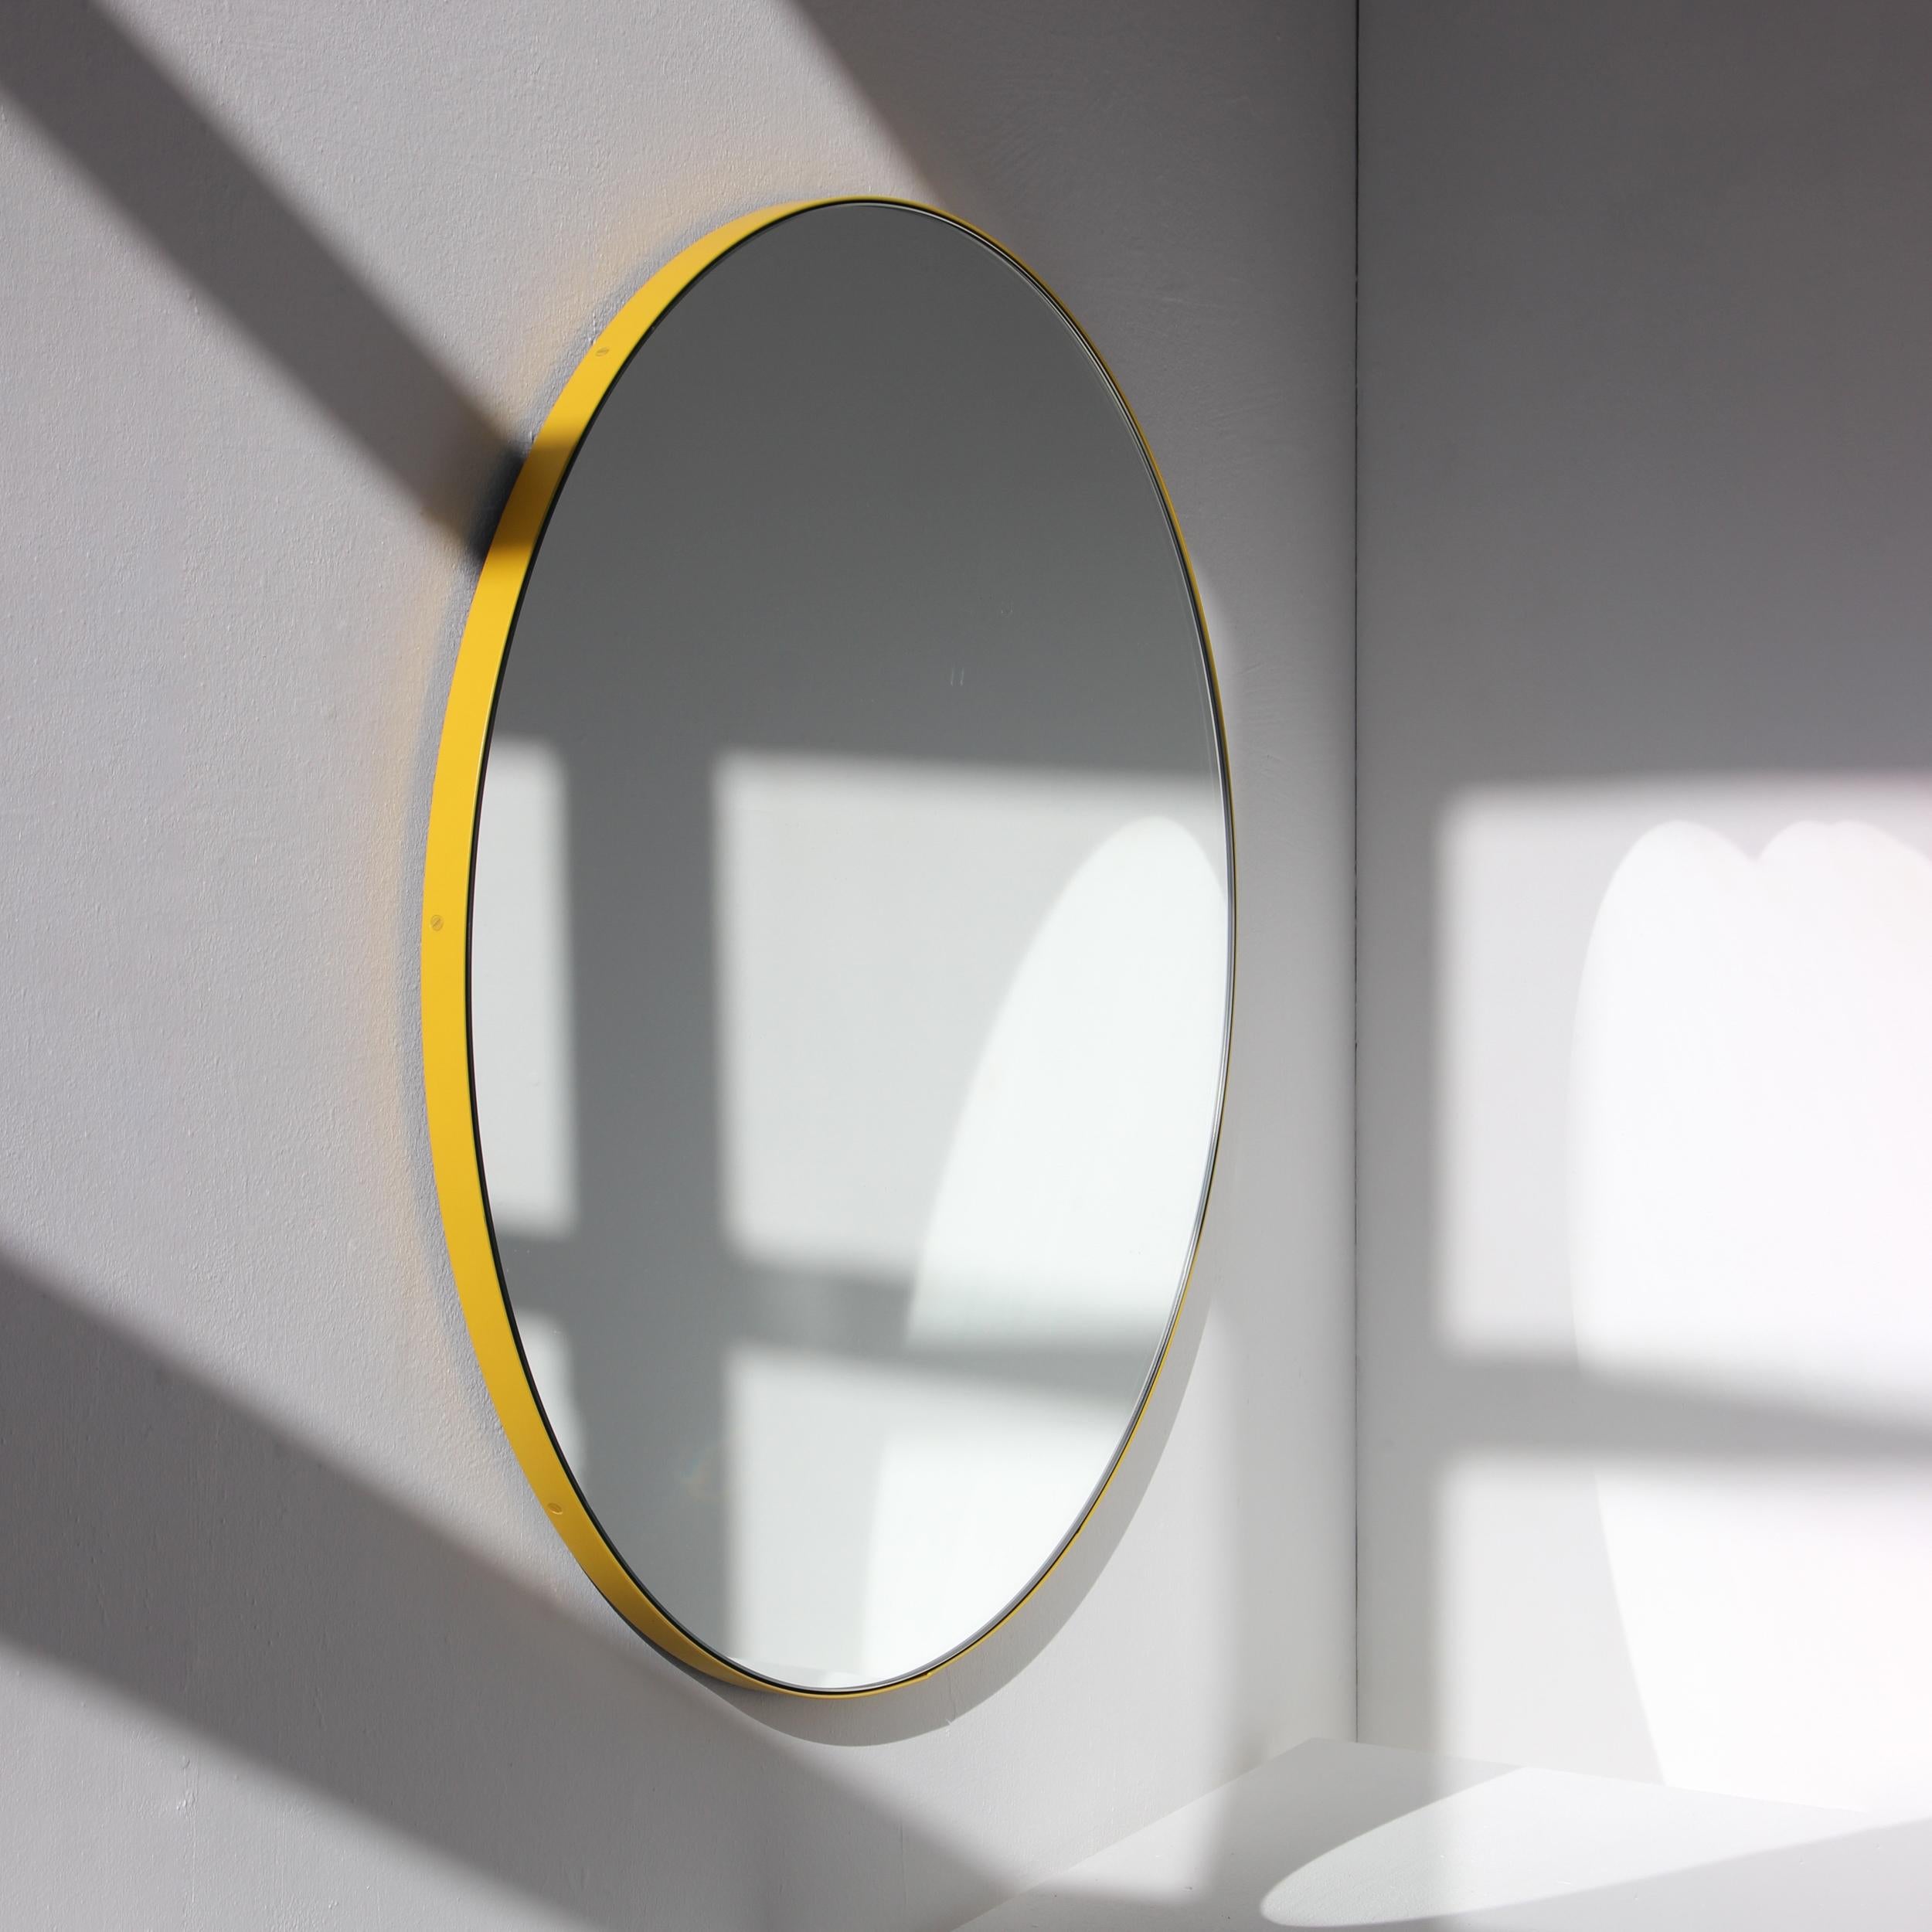 Minimalistischer runder Spiegel mit einem modernen, gelb pulverbeschichteten Aluminiumrahmen. Entworfen und handgefertigt in London, UK.

Die mittelgroßen, großen und extragroßen Spiegel (60, 80 und 100 cm) sind mit einem ausgeklügelten System von